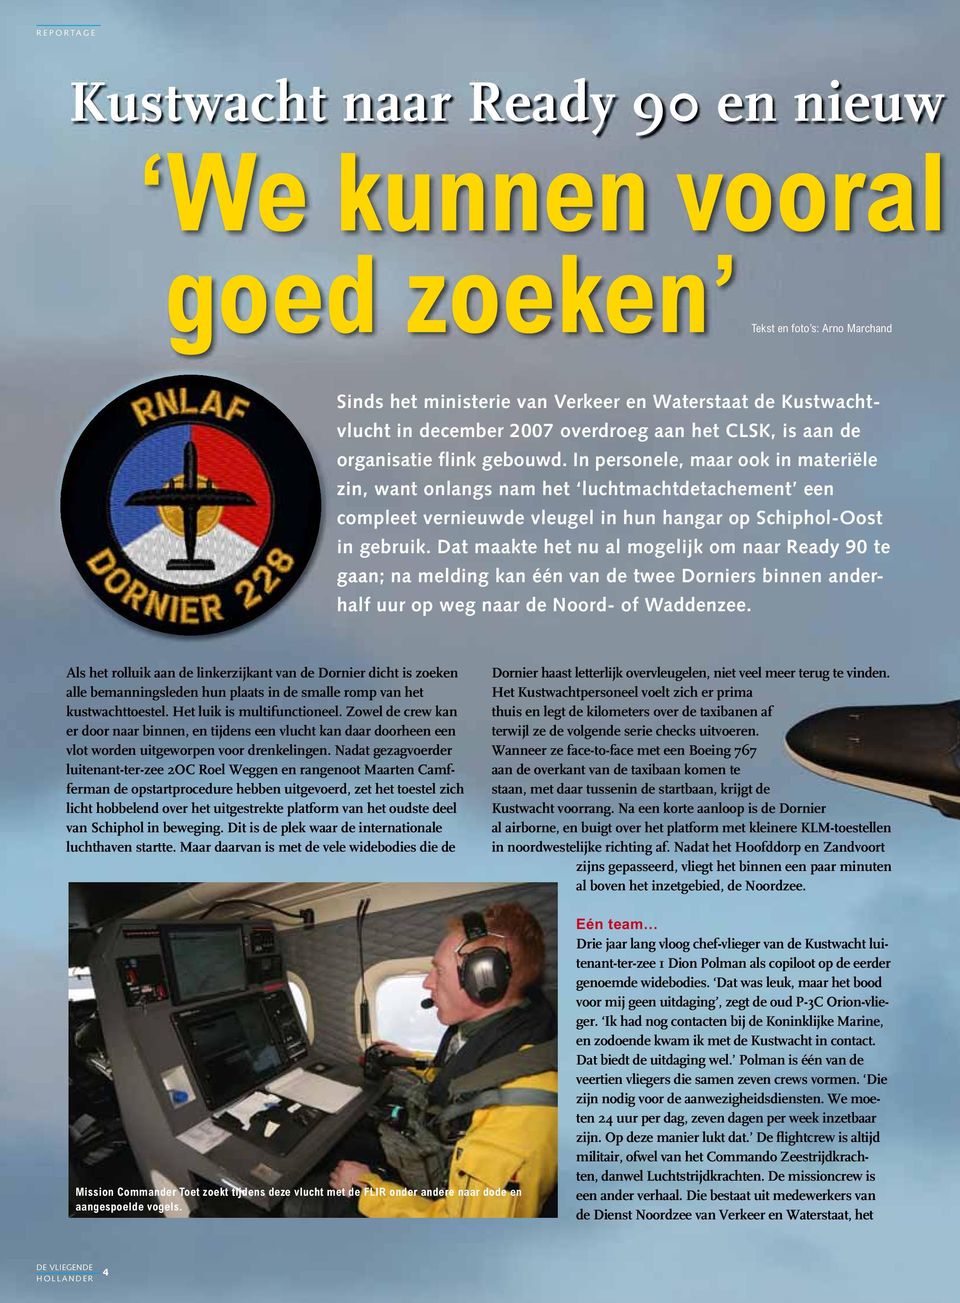 In personele, maar ook in materiële zin, want onlangs nam het luchtmachtdetachement een compleet vernieuwde vleugel in hun hangar op Schiphol-Oost in gebruik.